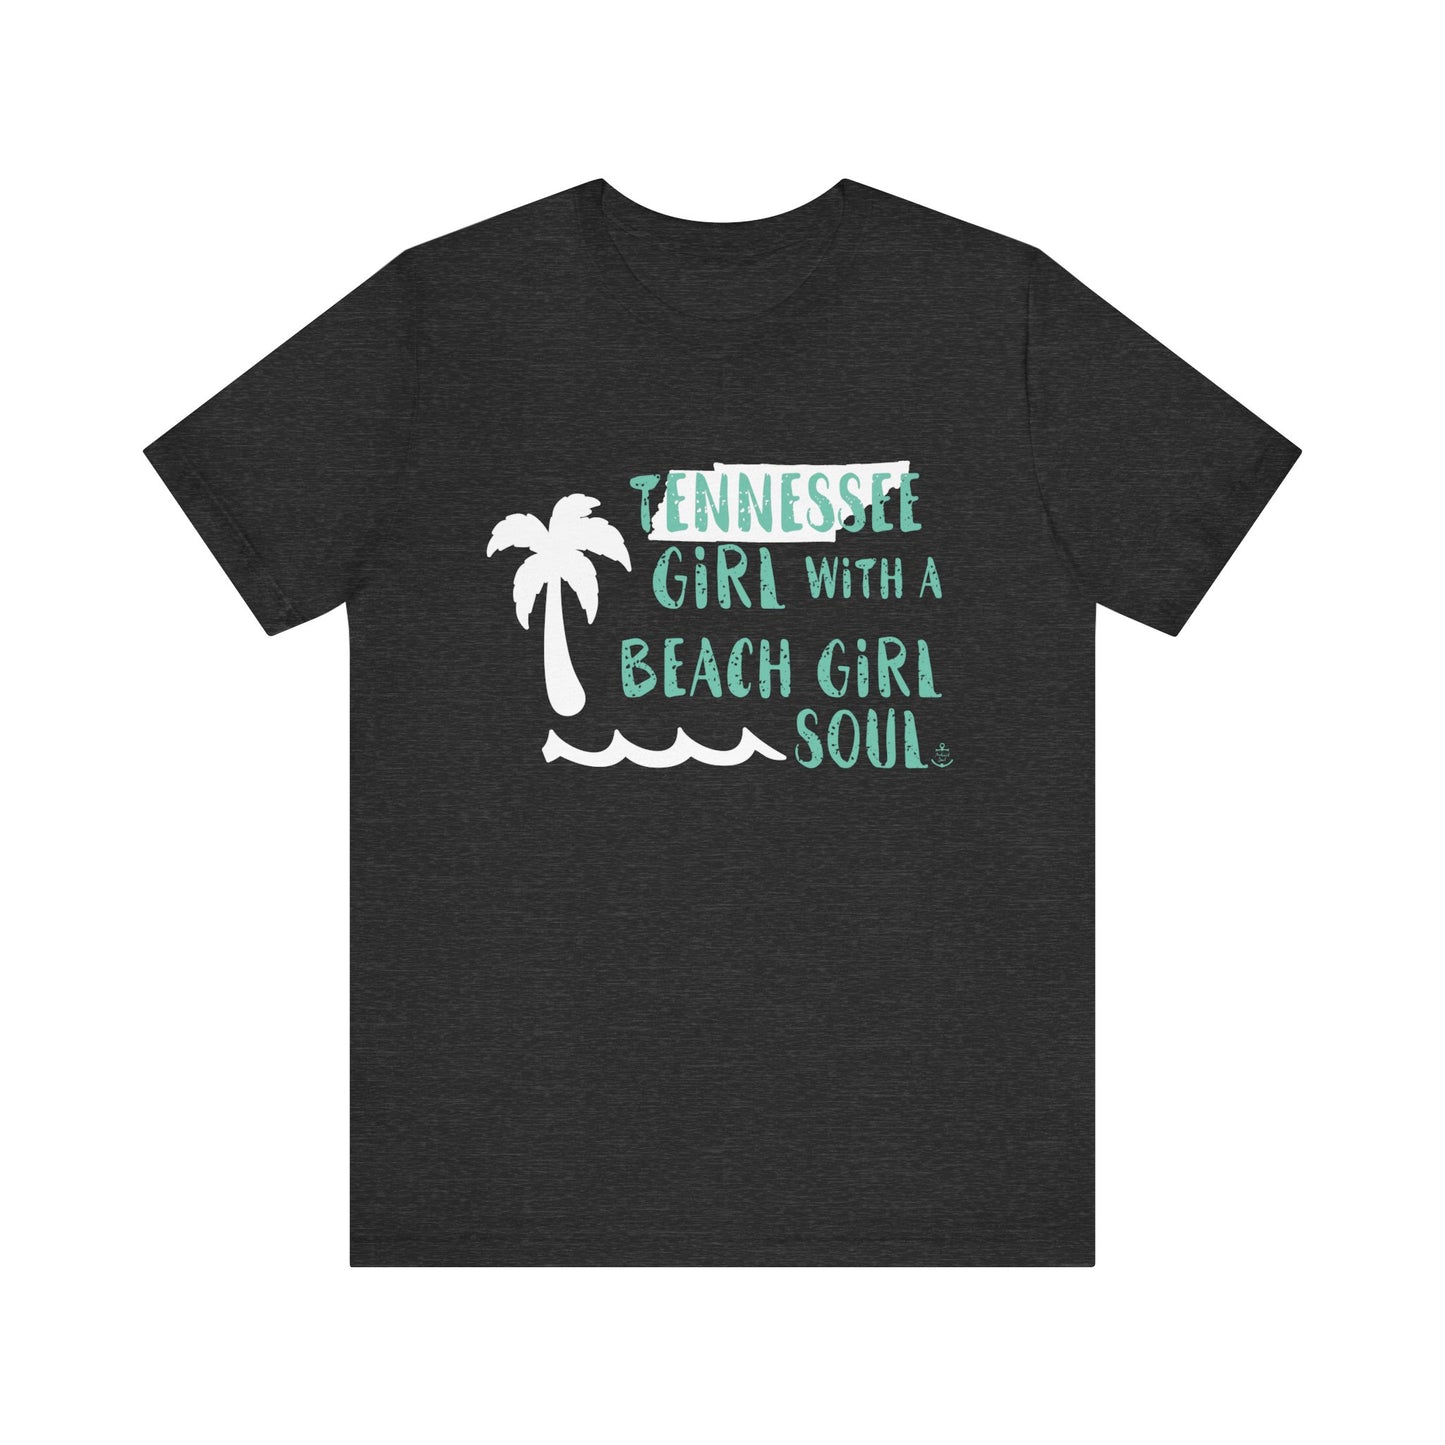 Tennessee girl tshirt, beach tshirt, beach girl, Christmas gift, tshirts for women, Anchored Soul Tshirt